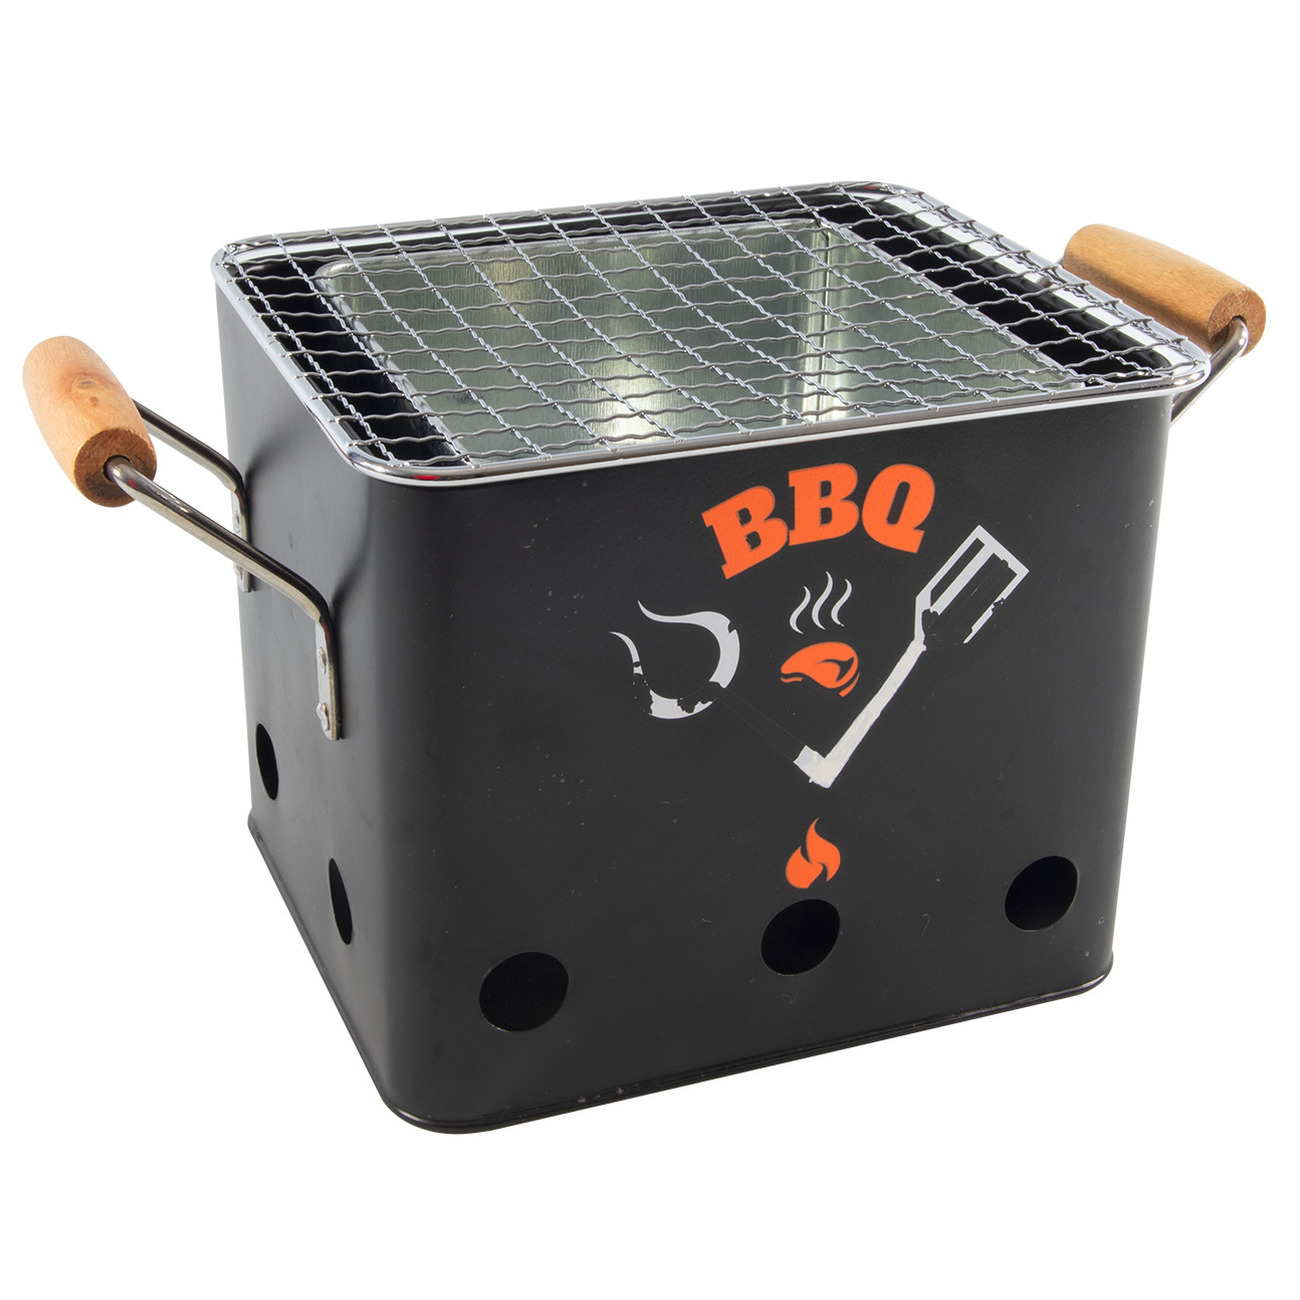 Houtskool barbecue-bbq zwart tafelmodel 18 cm vierkant